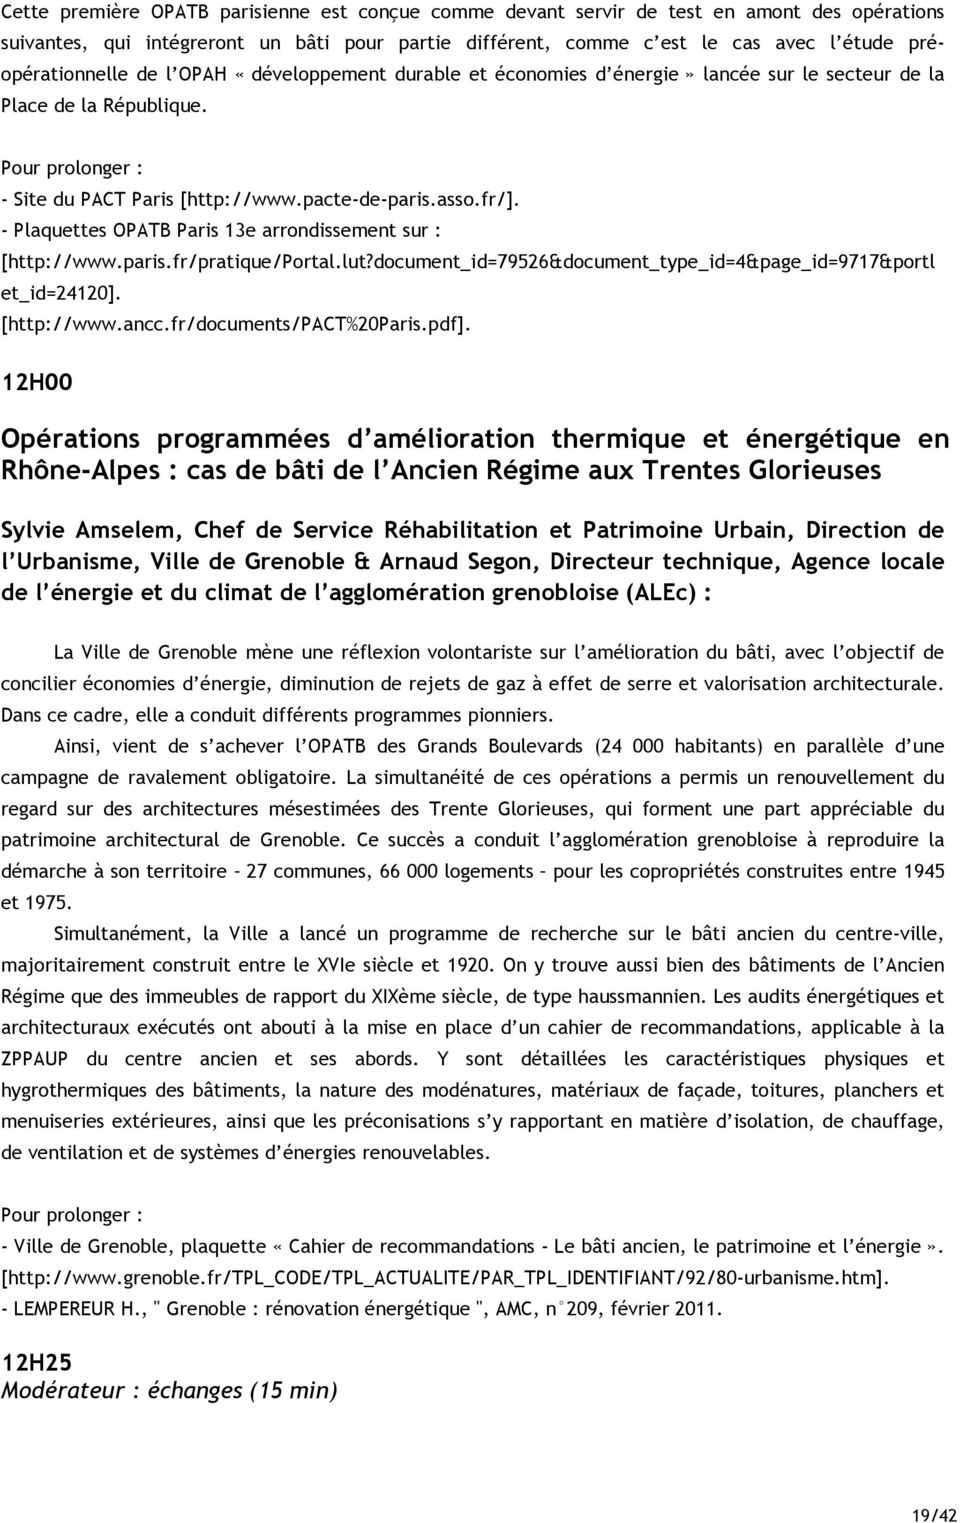 fr/]. - Plaquettes OPATB Paris 13e arrondissement sur : [http://www.paris.fr/pratique/portal.lut?document_id=79526&document_type_id=4&page_id=9717&portl et_id=24120]. [http://www.ancc.